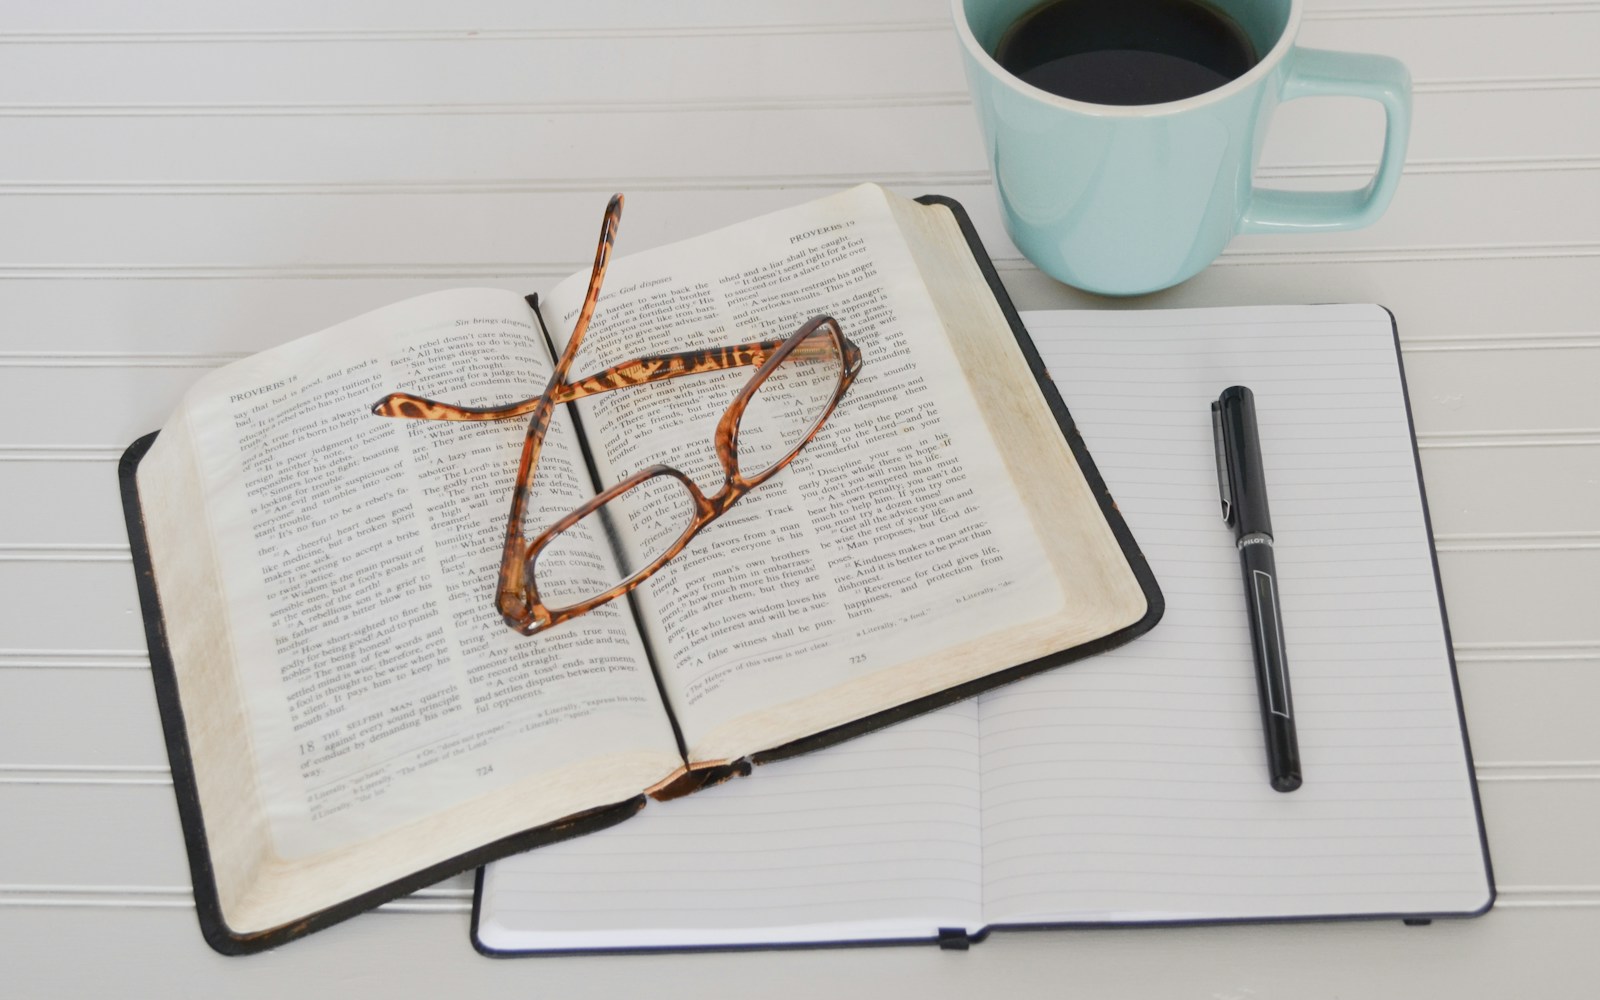 Ein theoretischer Rahmen basiert auf der Literaturrecherche, symbolisiert hier durch eine Brille auf einem aufgeschlagenen Buch, darunter ein aufgeschlagenes Notizbuch, darauf ein schwarzer Stift, daneben eine Tasse